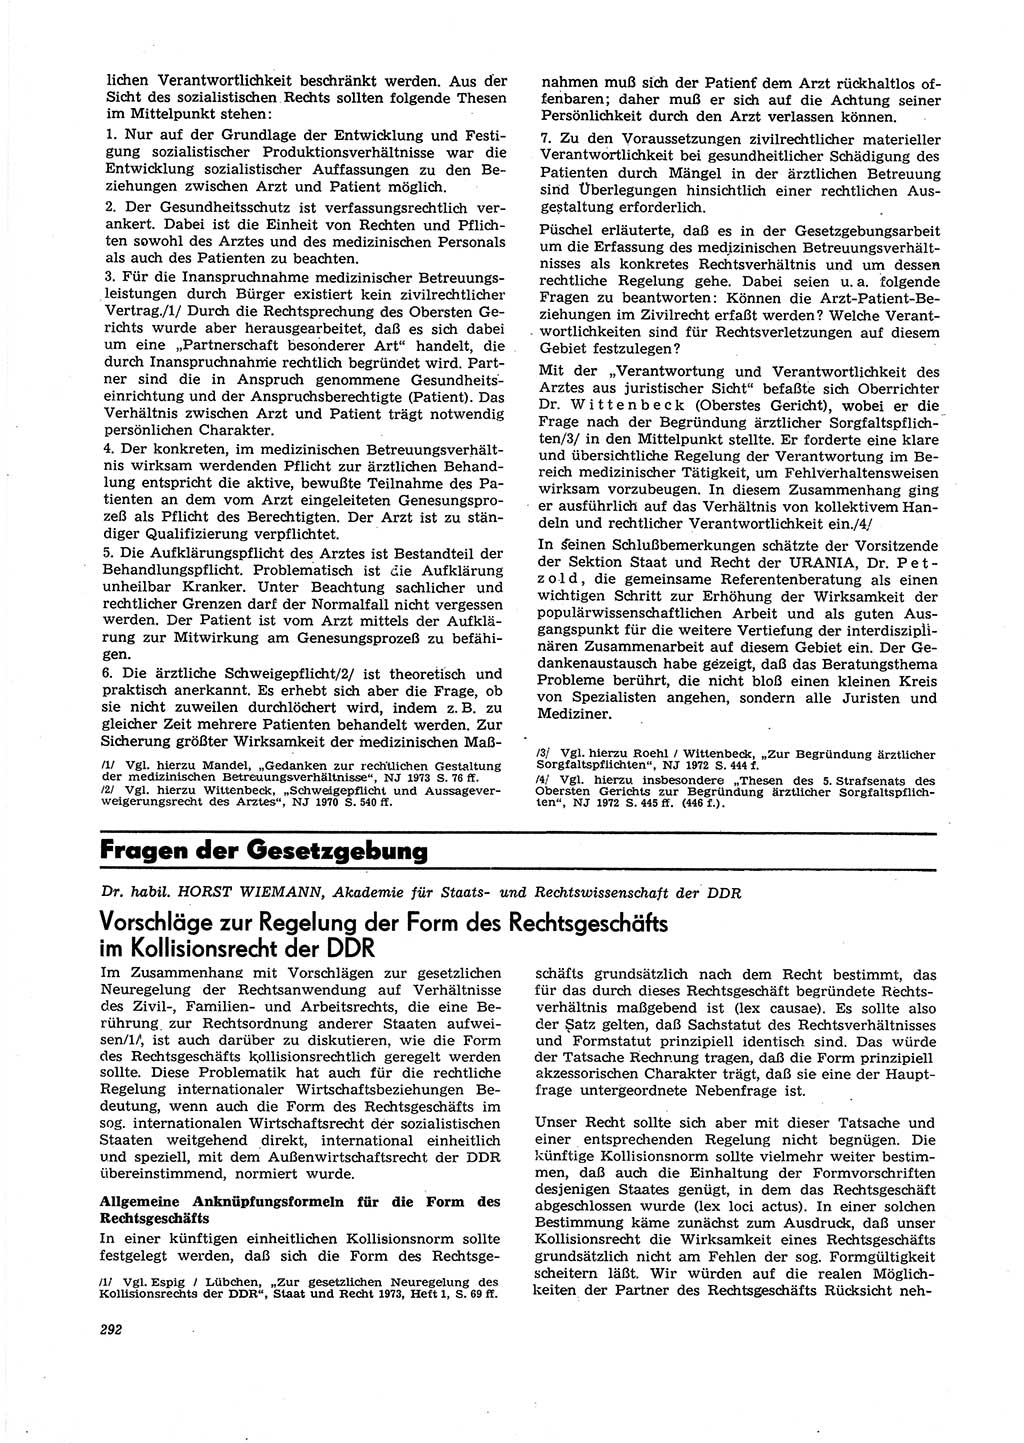 Neue Justiz (NJ), Zeitschrift für Recht und Rechtswissenschaft [Deutsche Demokratische Republik (DDR)], 27. Jahrgang 1973, Seite 292 (NJ DDR 1973, S. 292)